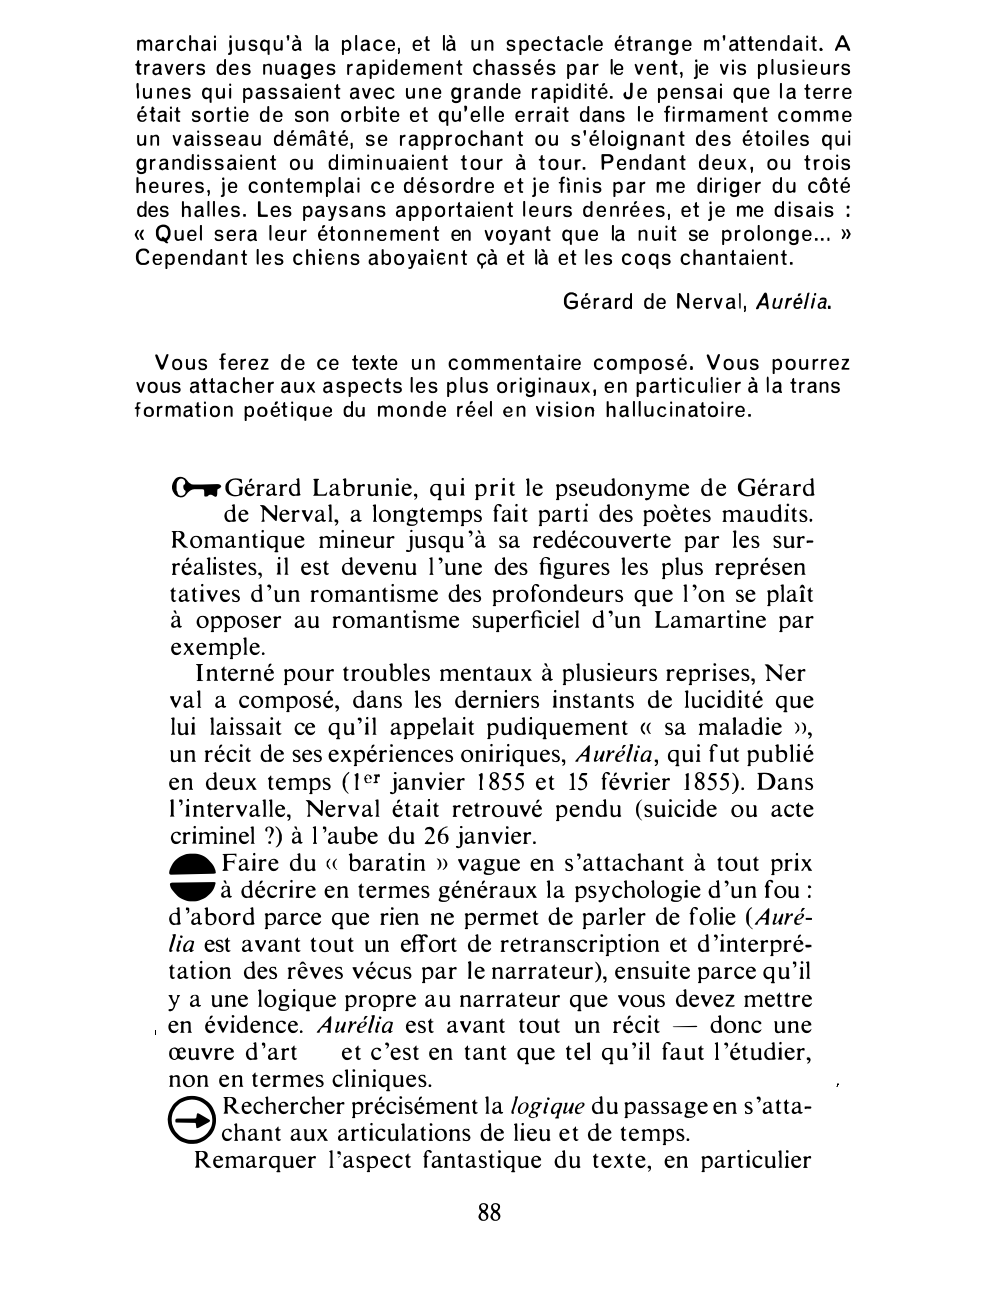 Prévisualisation du document Gérard de Nerval, Aurélia: commentaire composé